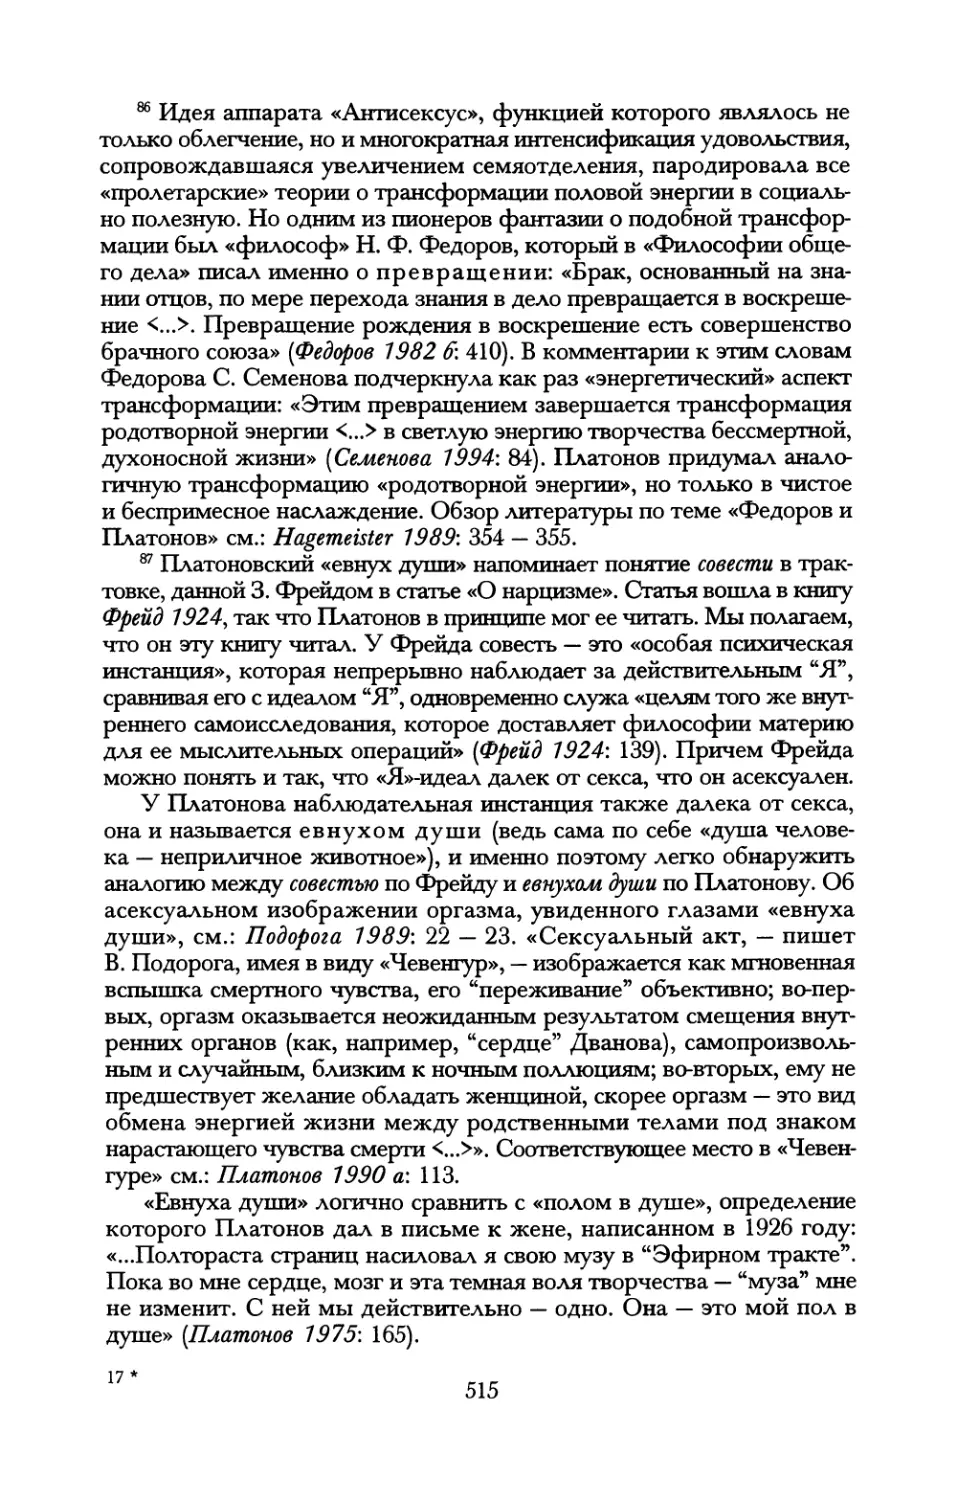 Андрей Платонов. Антисексус